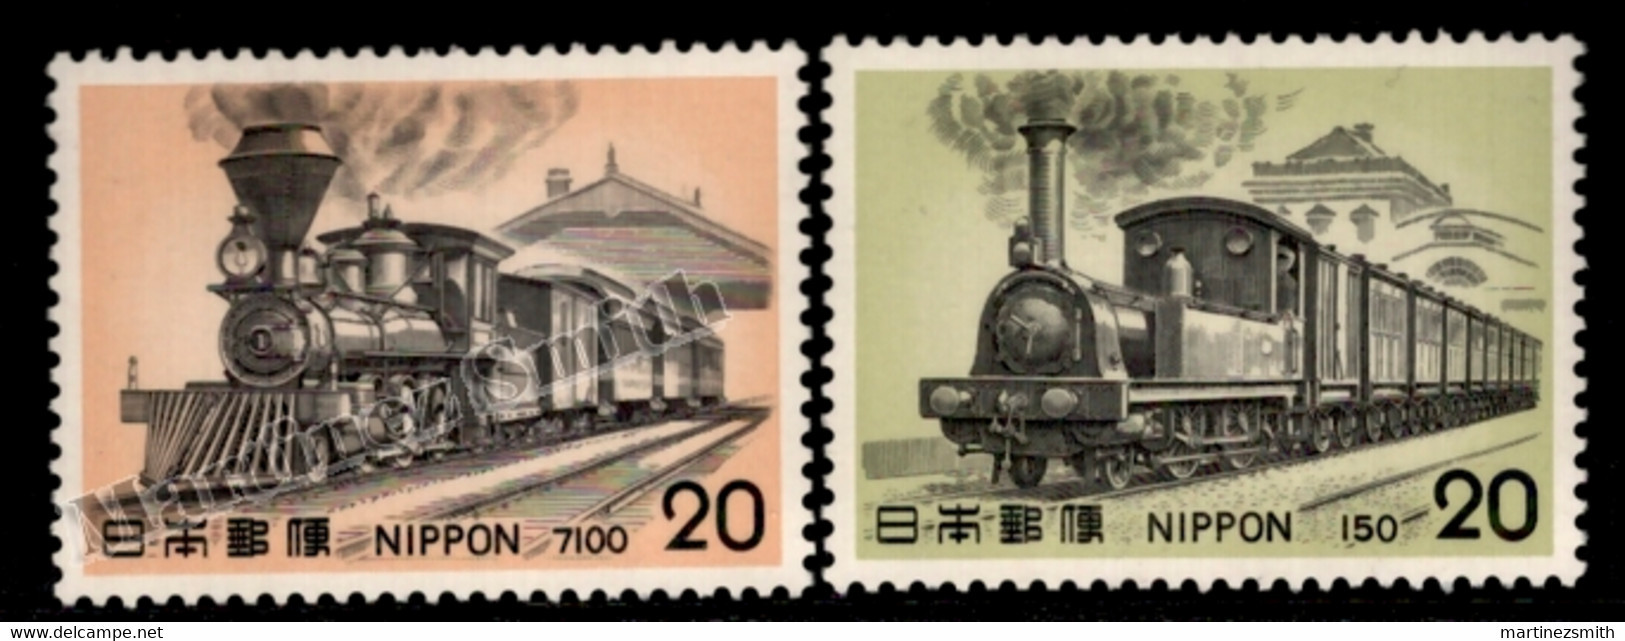 Japon - Japan 1975 Yvert 1159-60, Steam Engines (V) , Locomotives, Train - MNH - Unused Stamps